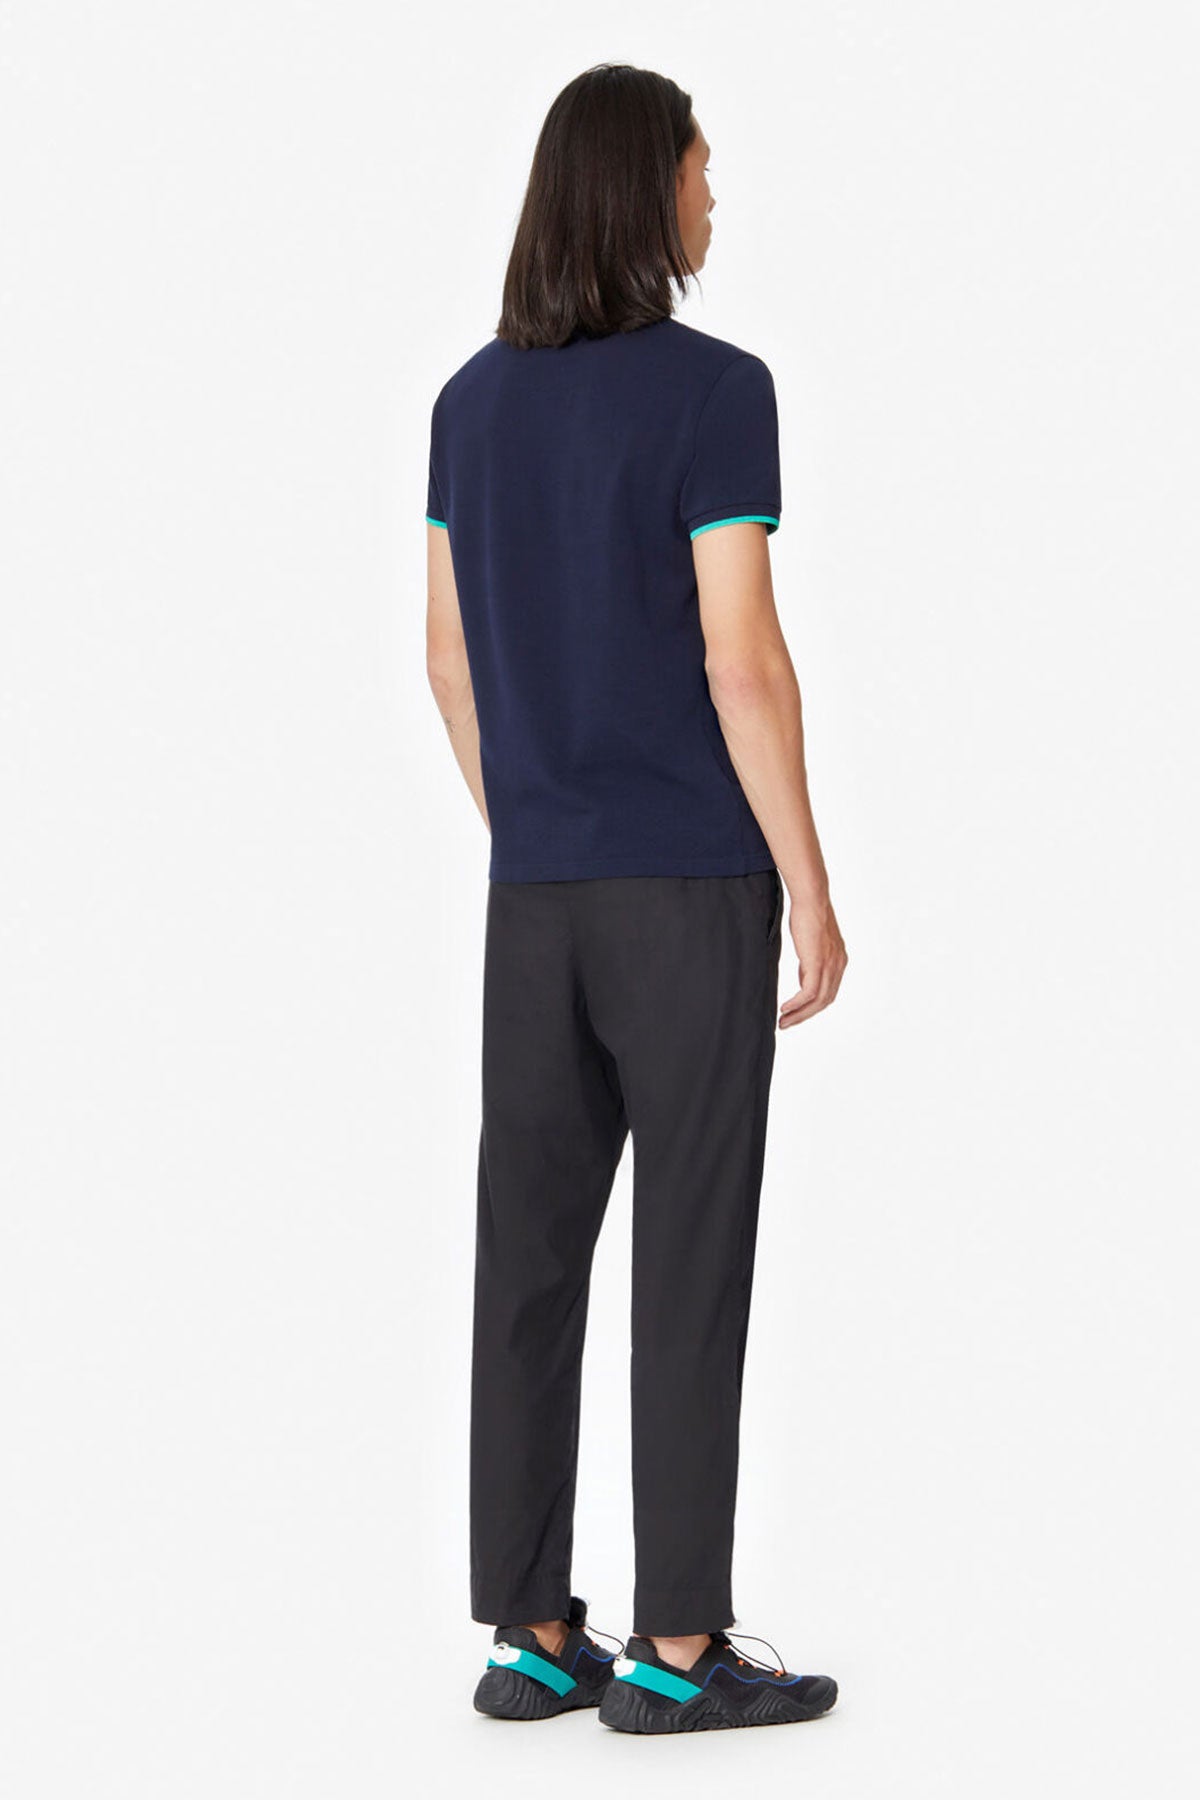 Kenzo Polo Yaka Slim Fit T-shirt-Libas Trendy Fashion Store